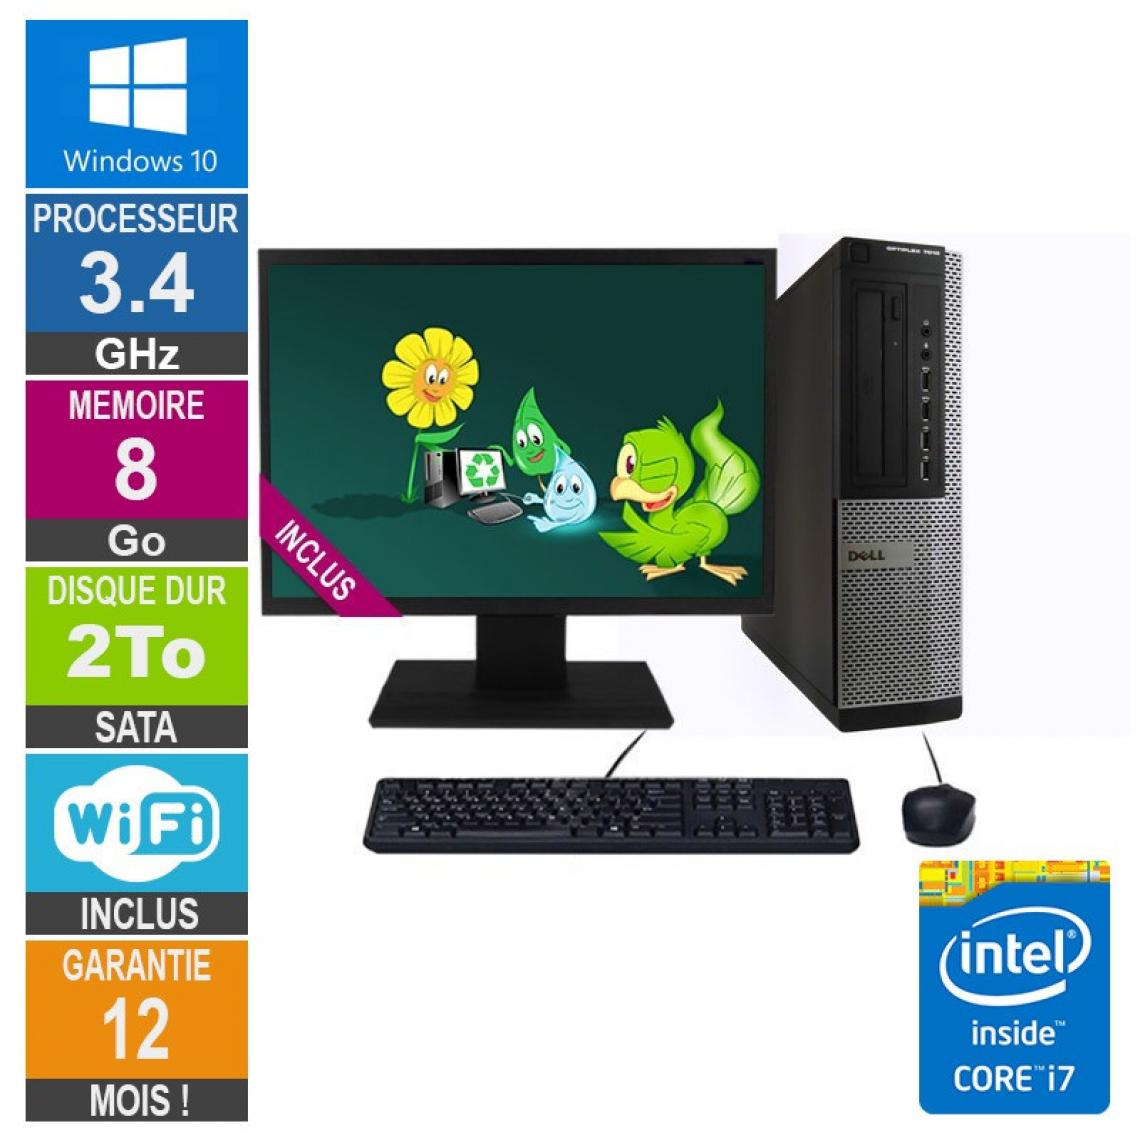 Dell - PC Dell 7010 DT Core i7-3770 3.40GHz 8Go/2To Wifi W10 + Ecran 19 - PC Fixe